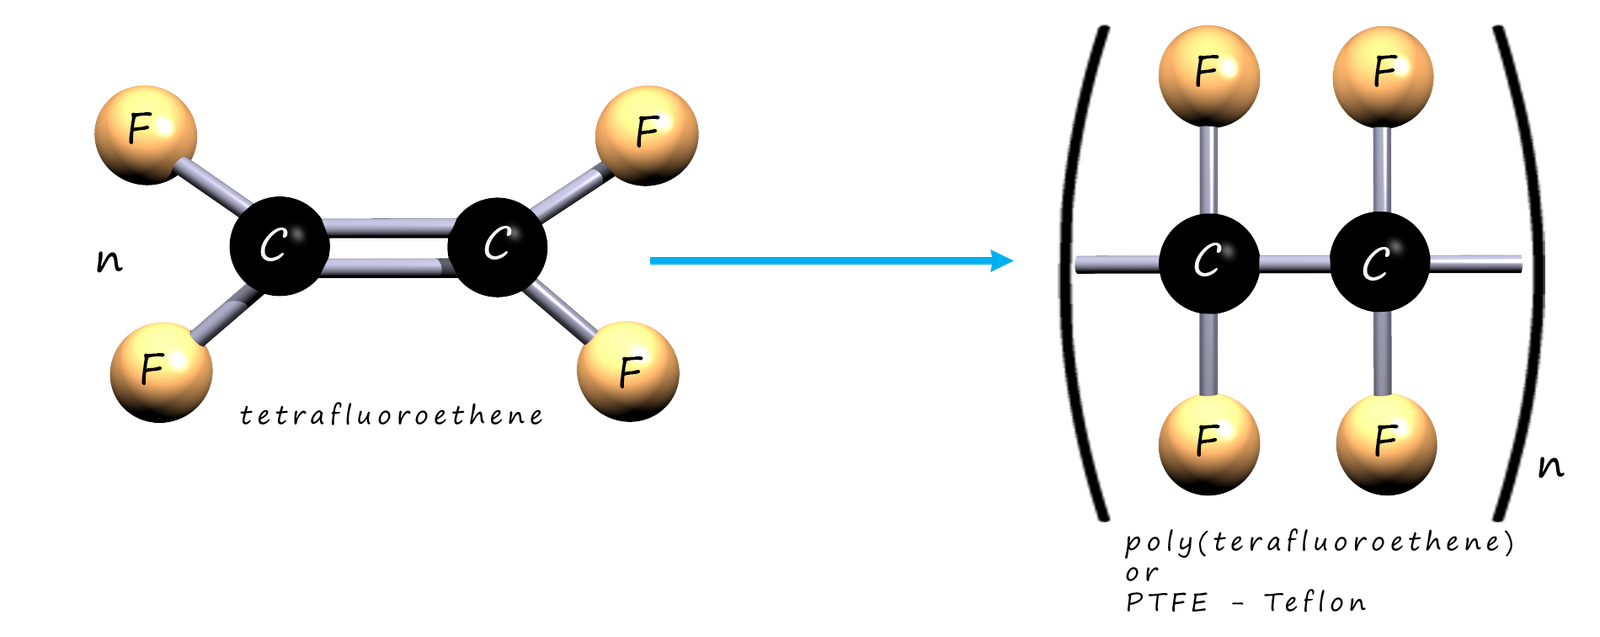 Polymerisation of tetrafluoroethene, word, symbolic and model equations.